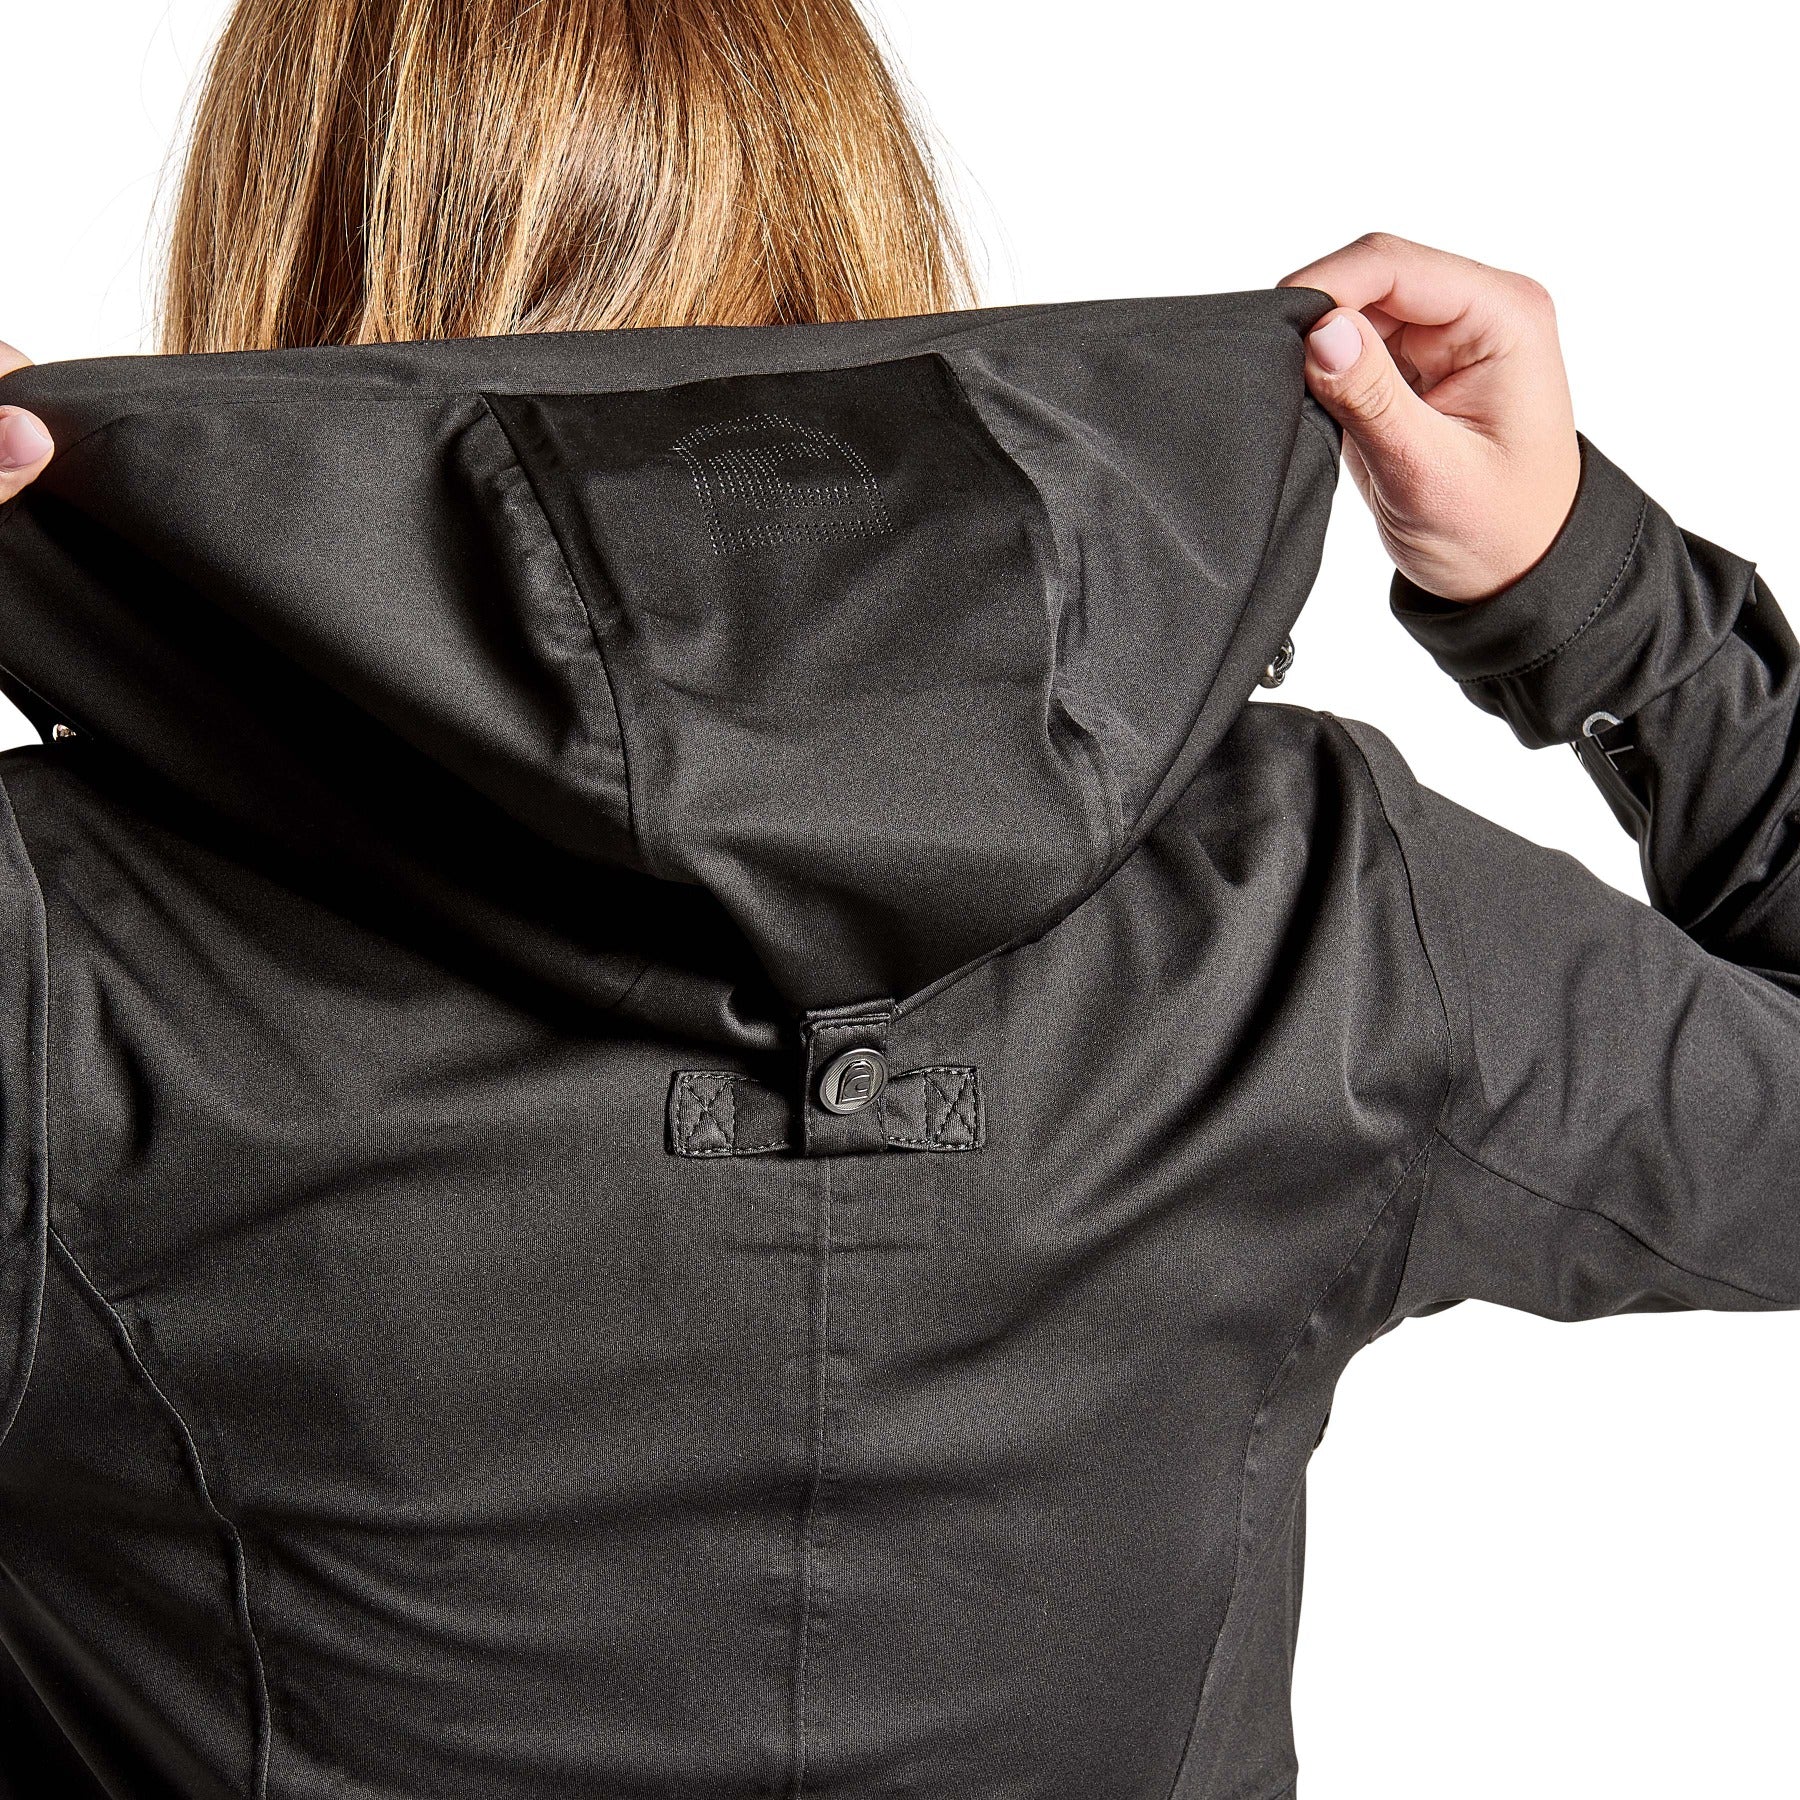 Cavallo DAIANE Bi-elastic Softshell Jacket, Black